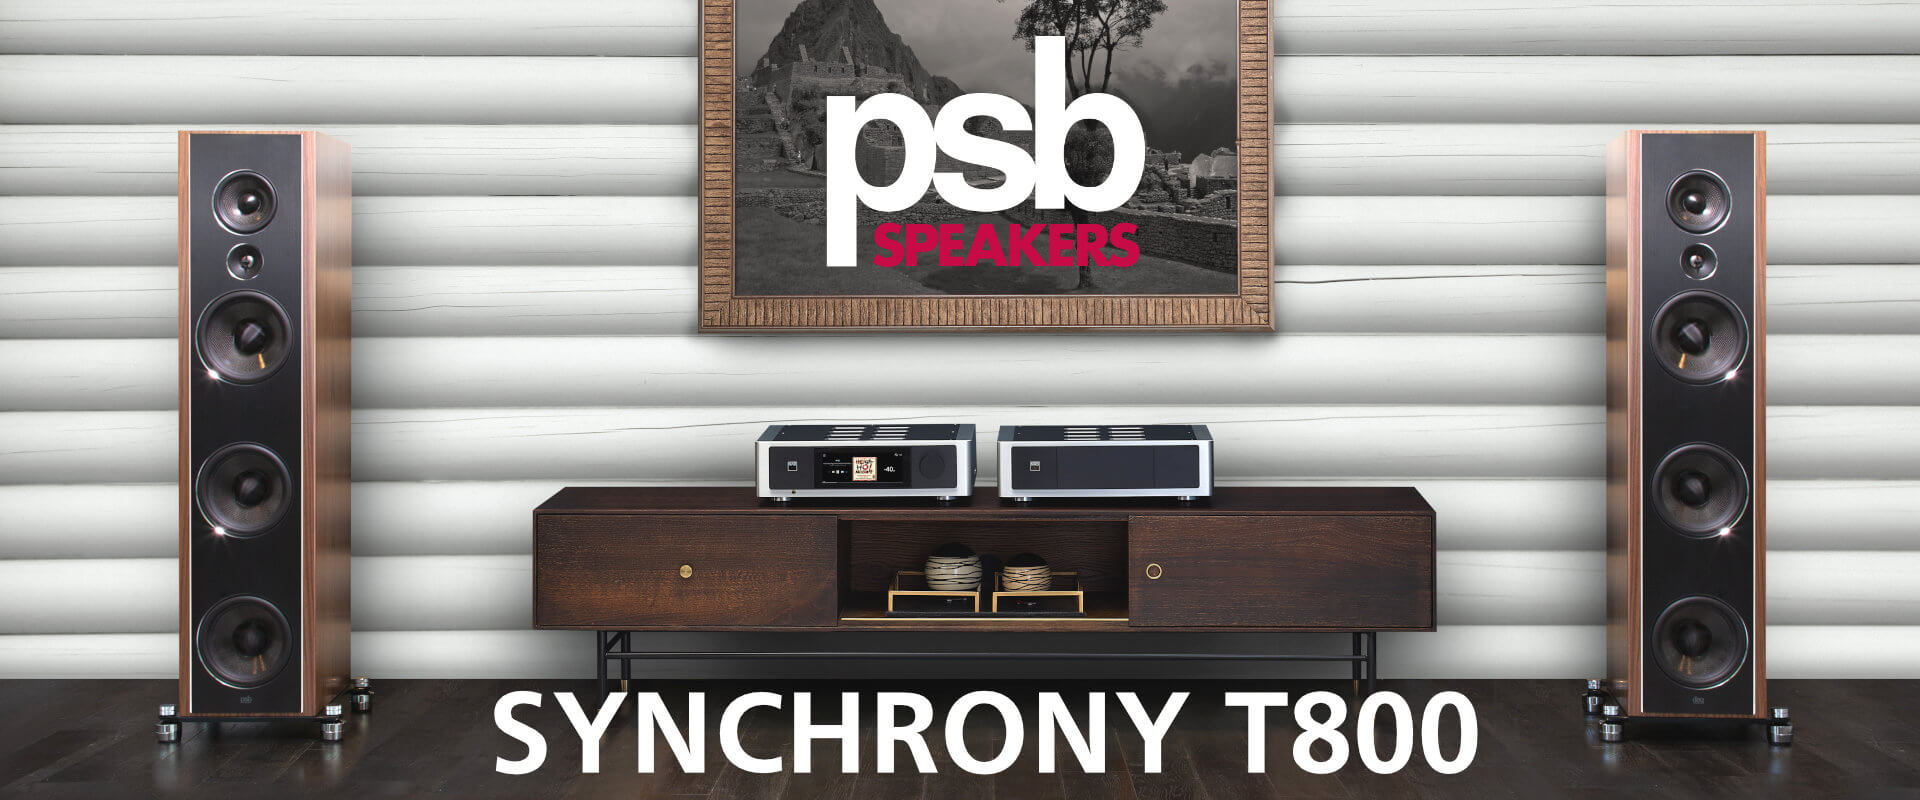 PSB synchrony t800